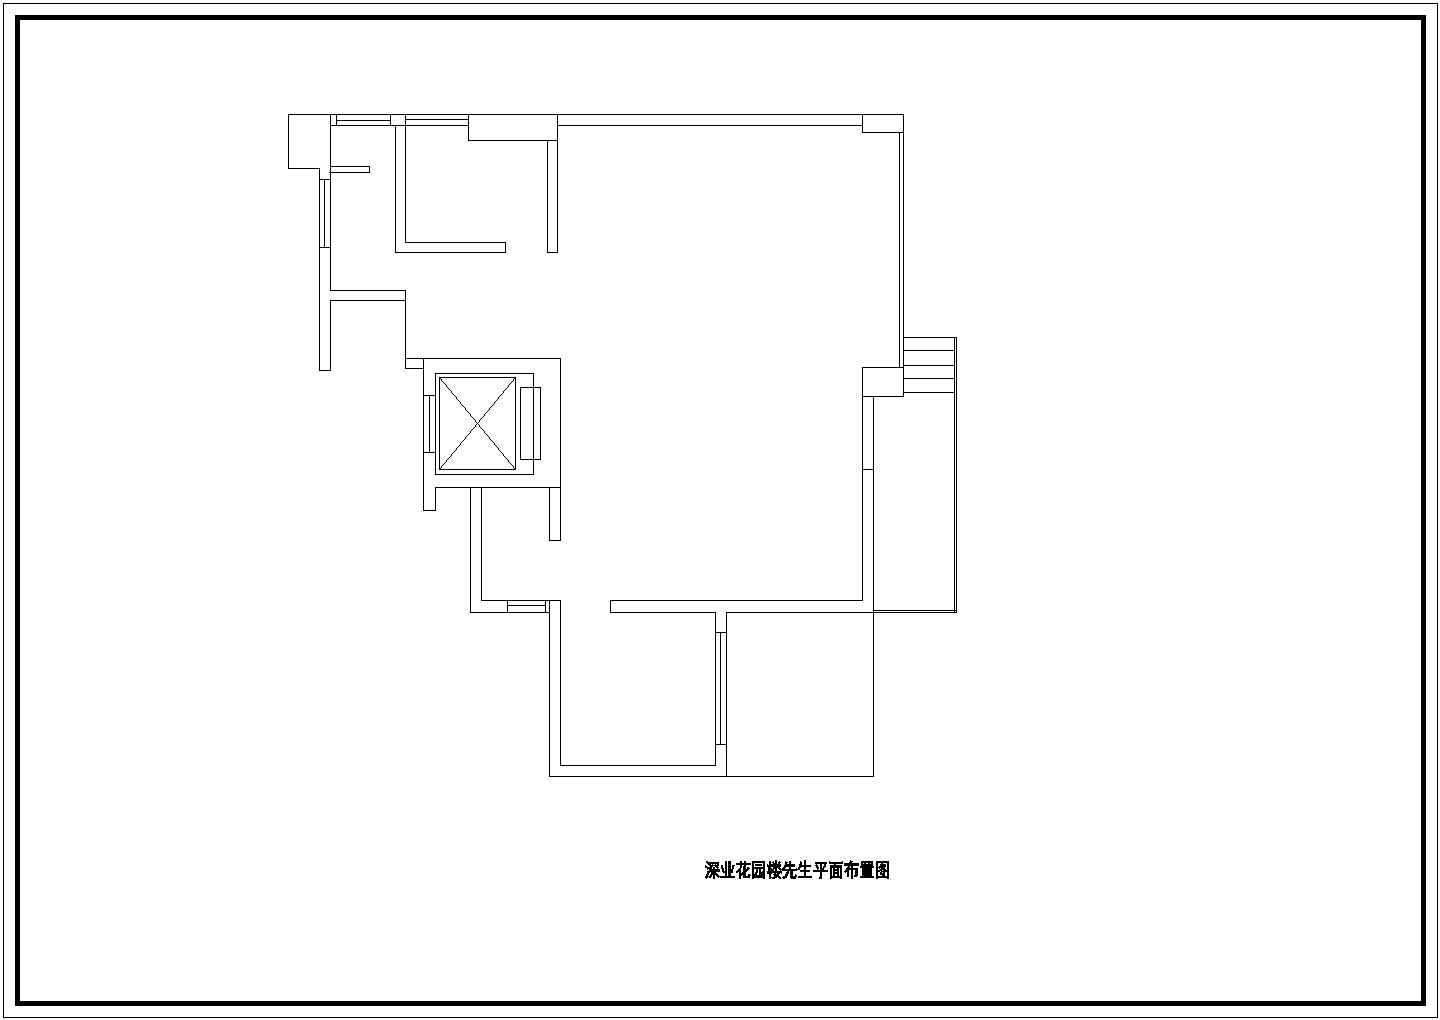 某花园小区二层砖混结构私人小别墅室内装修设计cad全套施工图（甲级院设计）